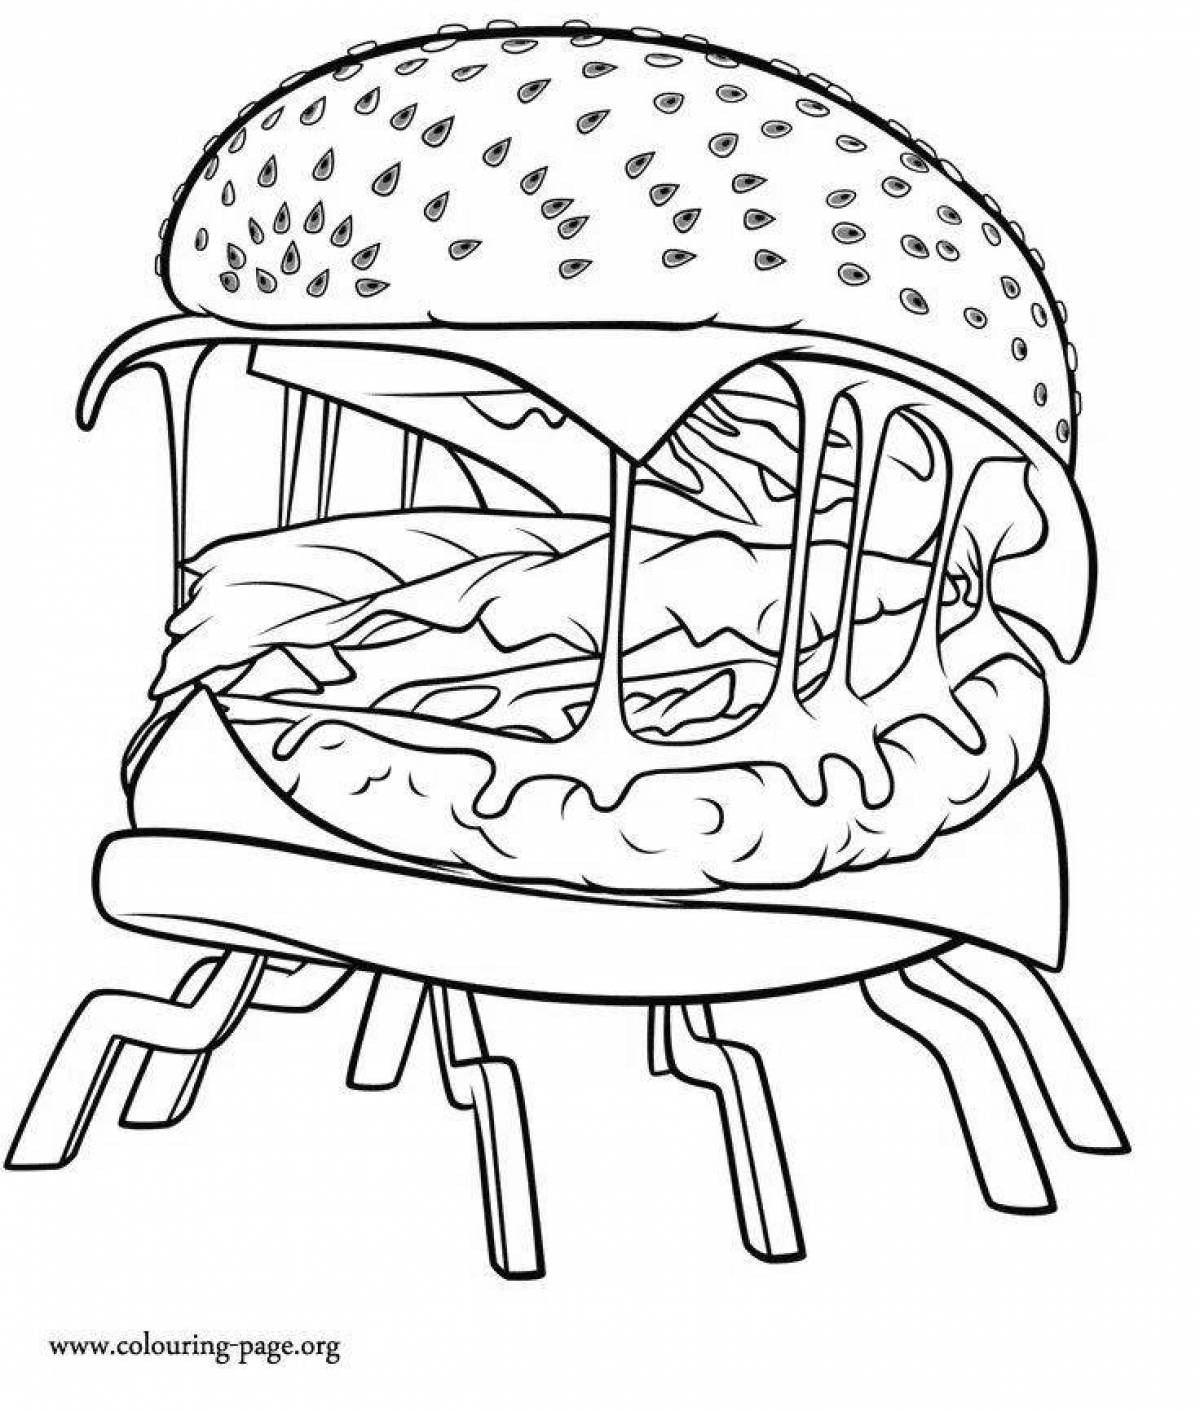 Adorable hamburger coloring page